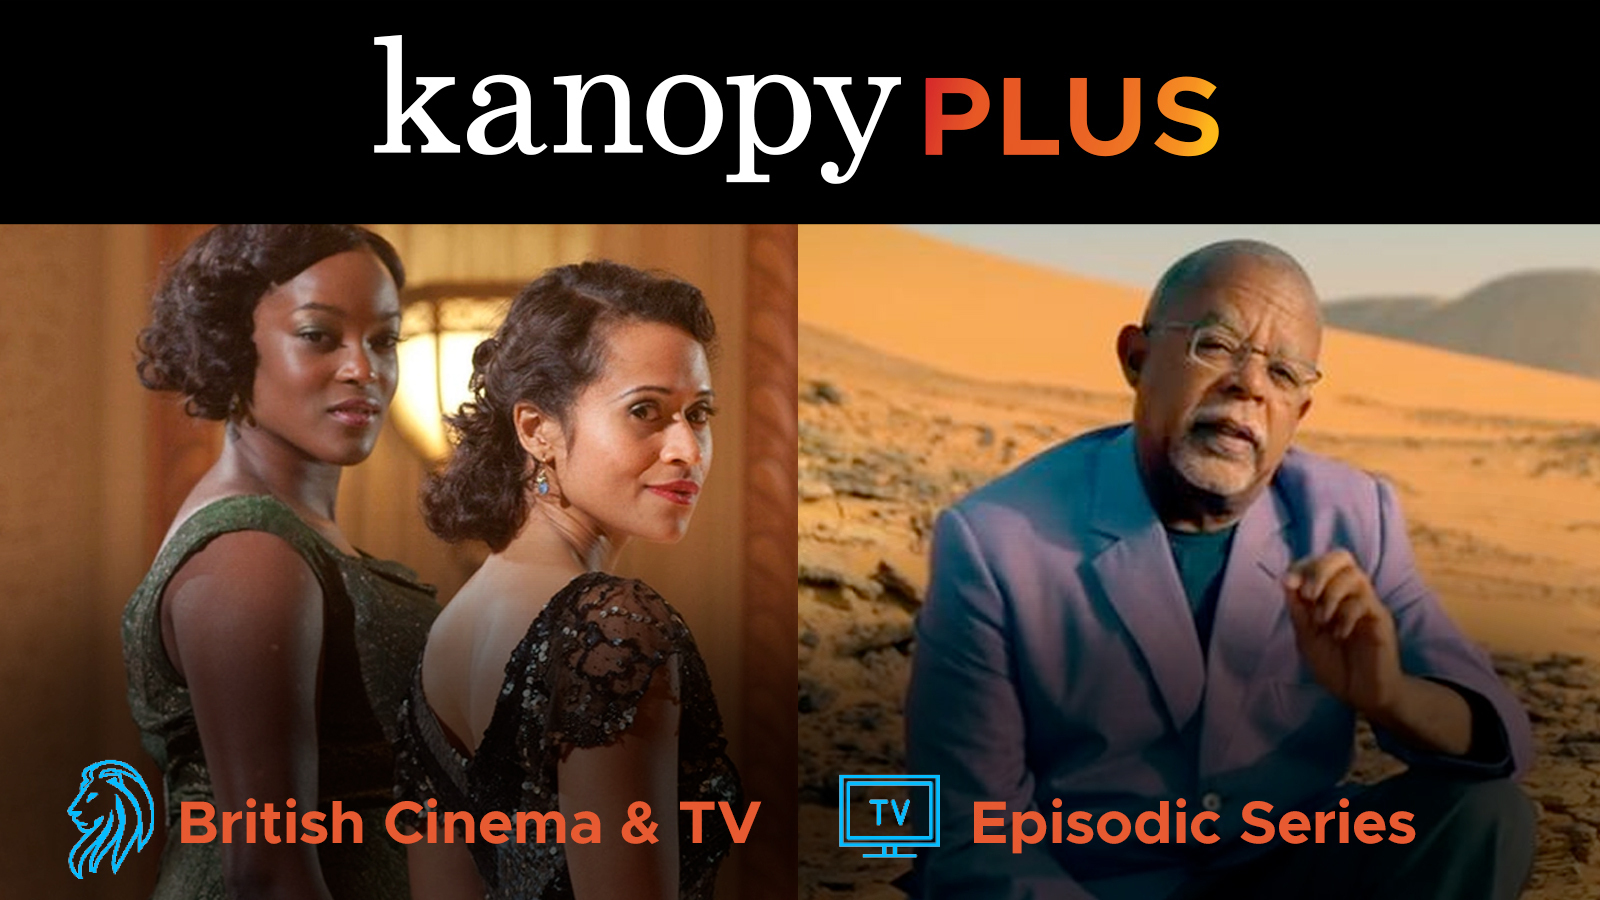 NEW Kanopy Plus packs: British Cinema and TV  and Episodic Series